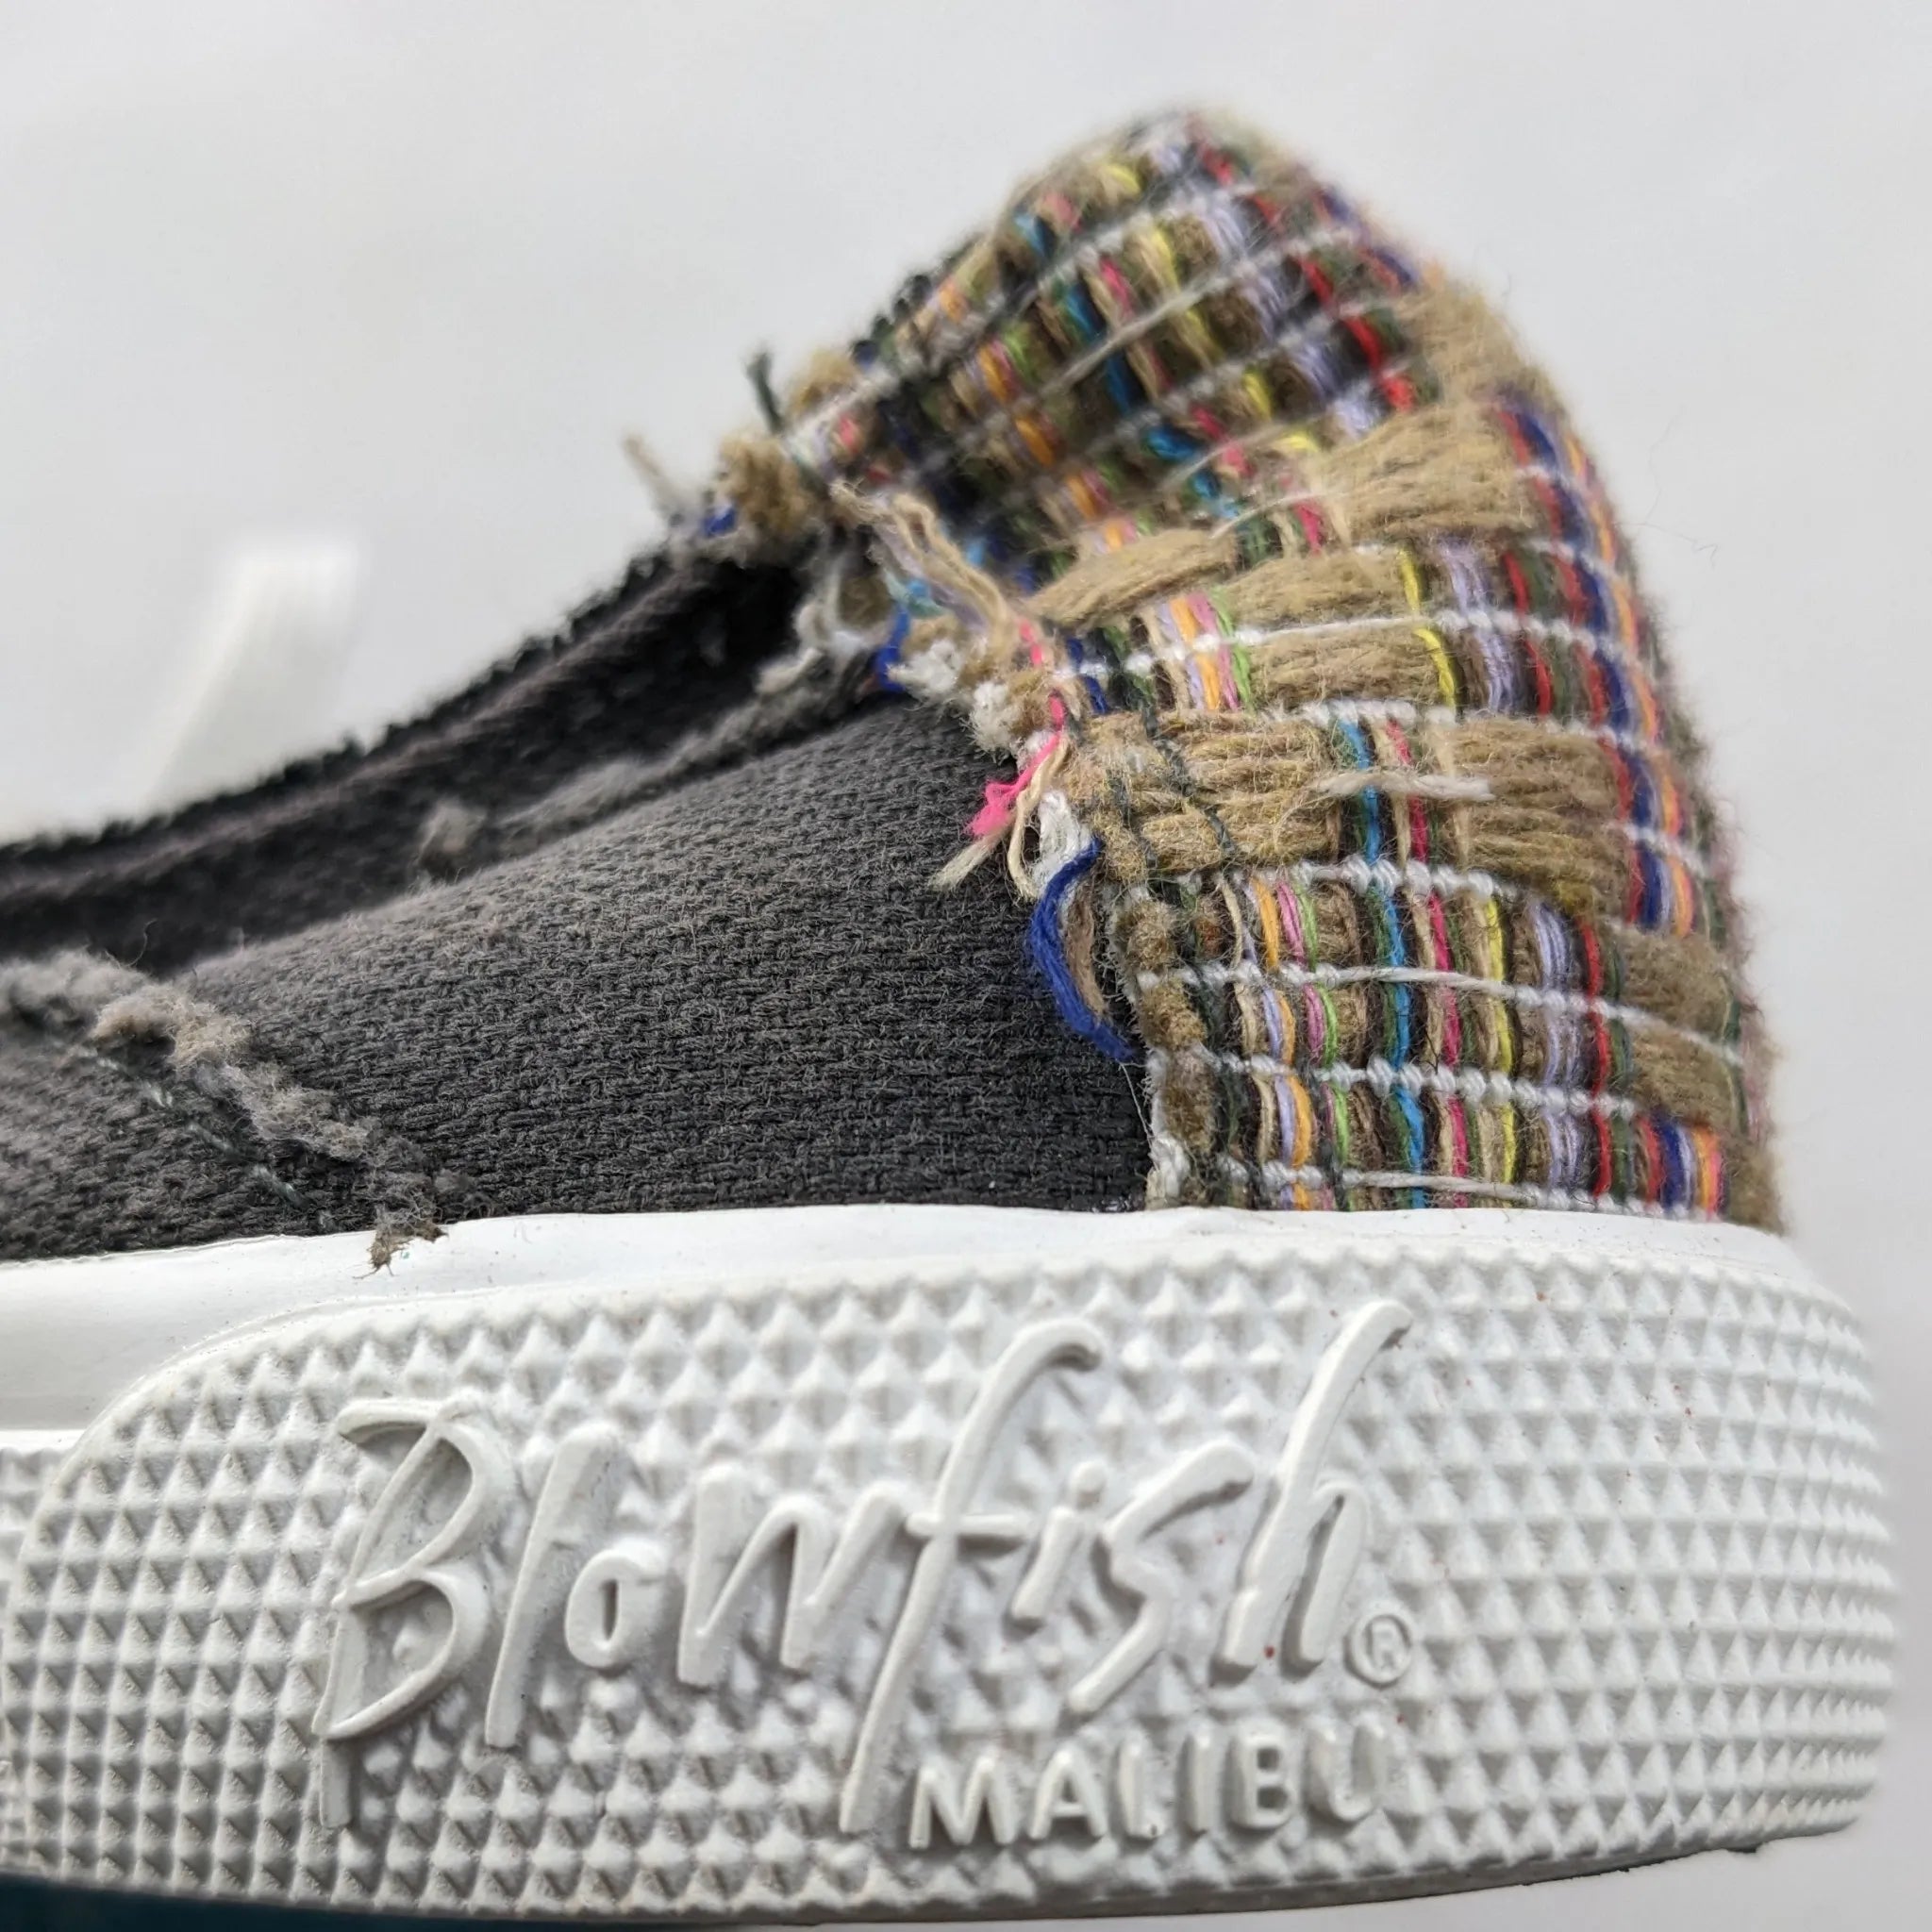 BlowFish Malibu Sneakers